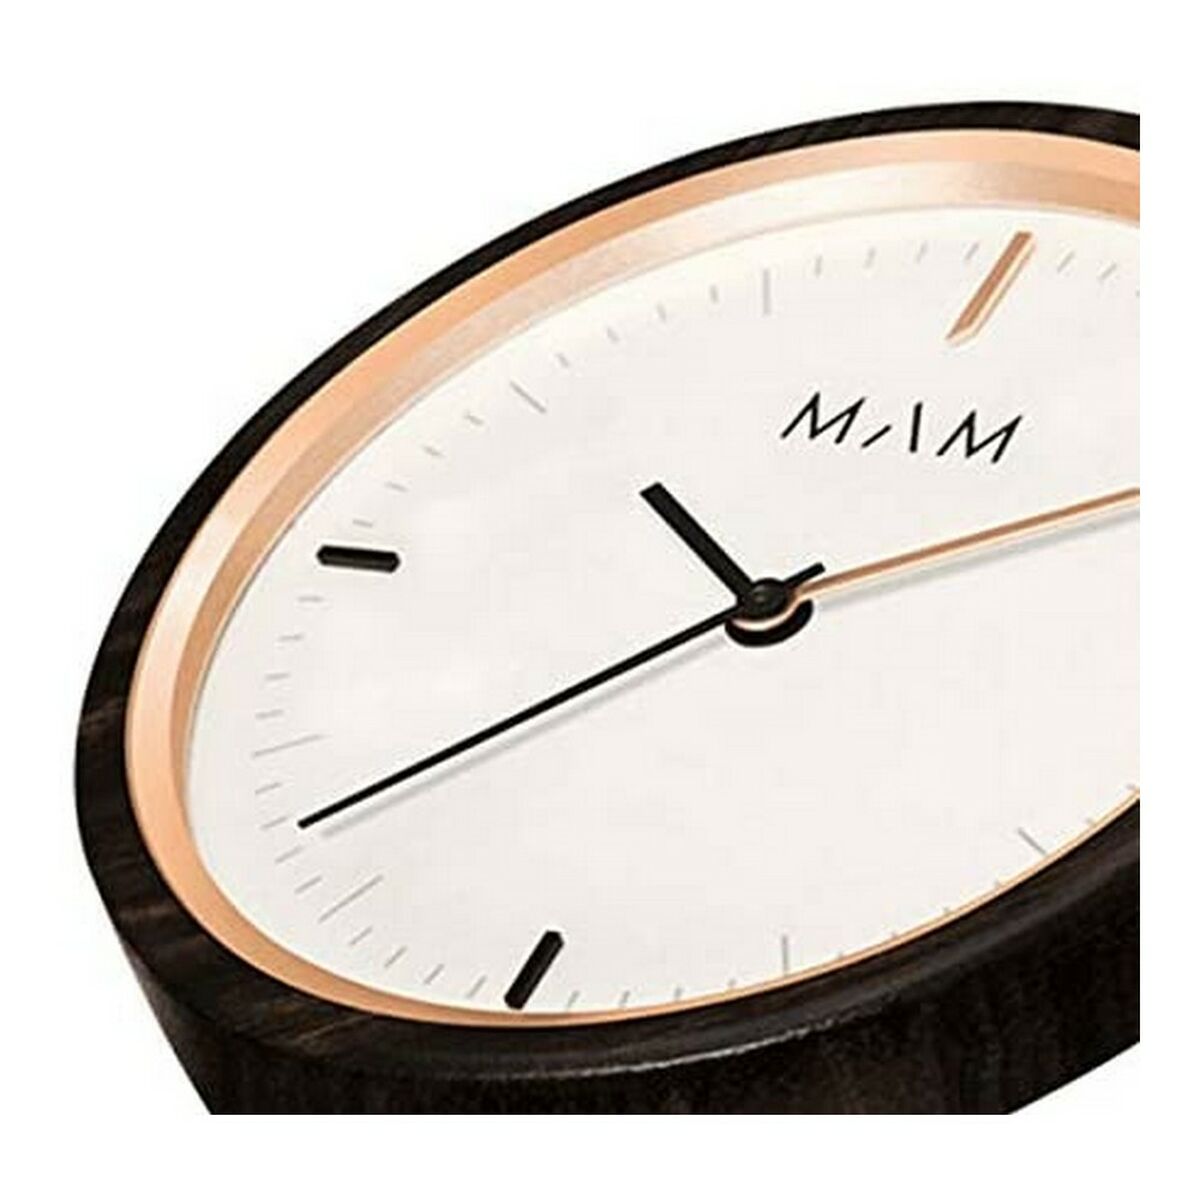 Kaufe Unisex-Uhr MAM 664 (Ø 33 mm) bei AWK Flagship um € 76.00